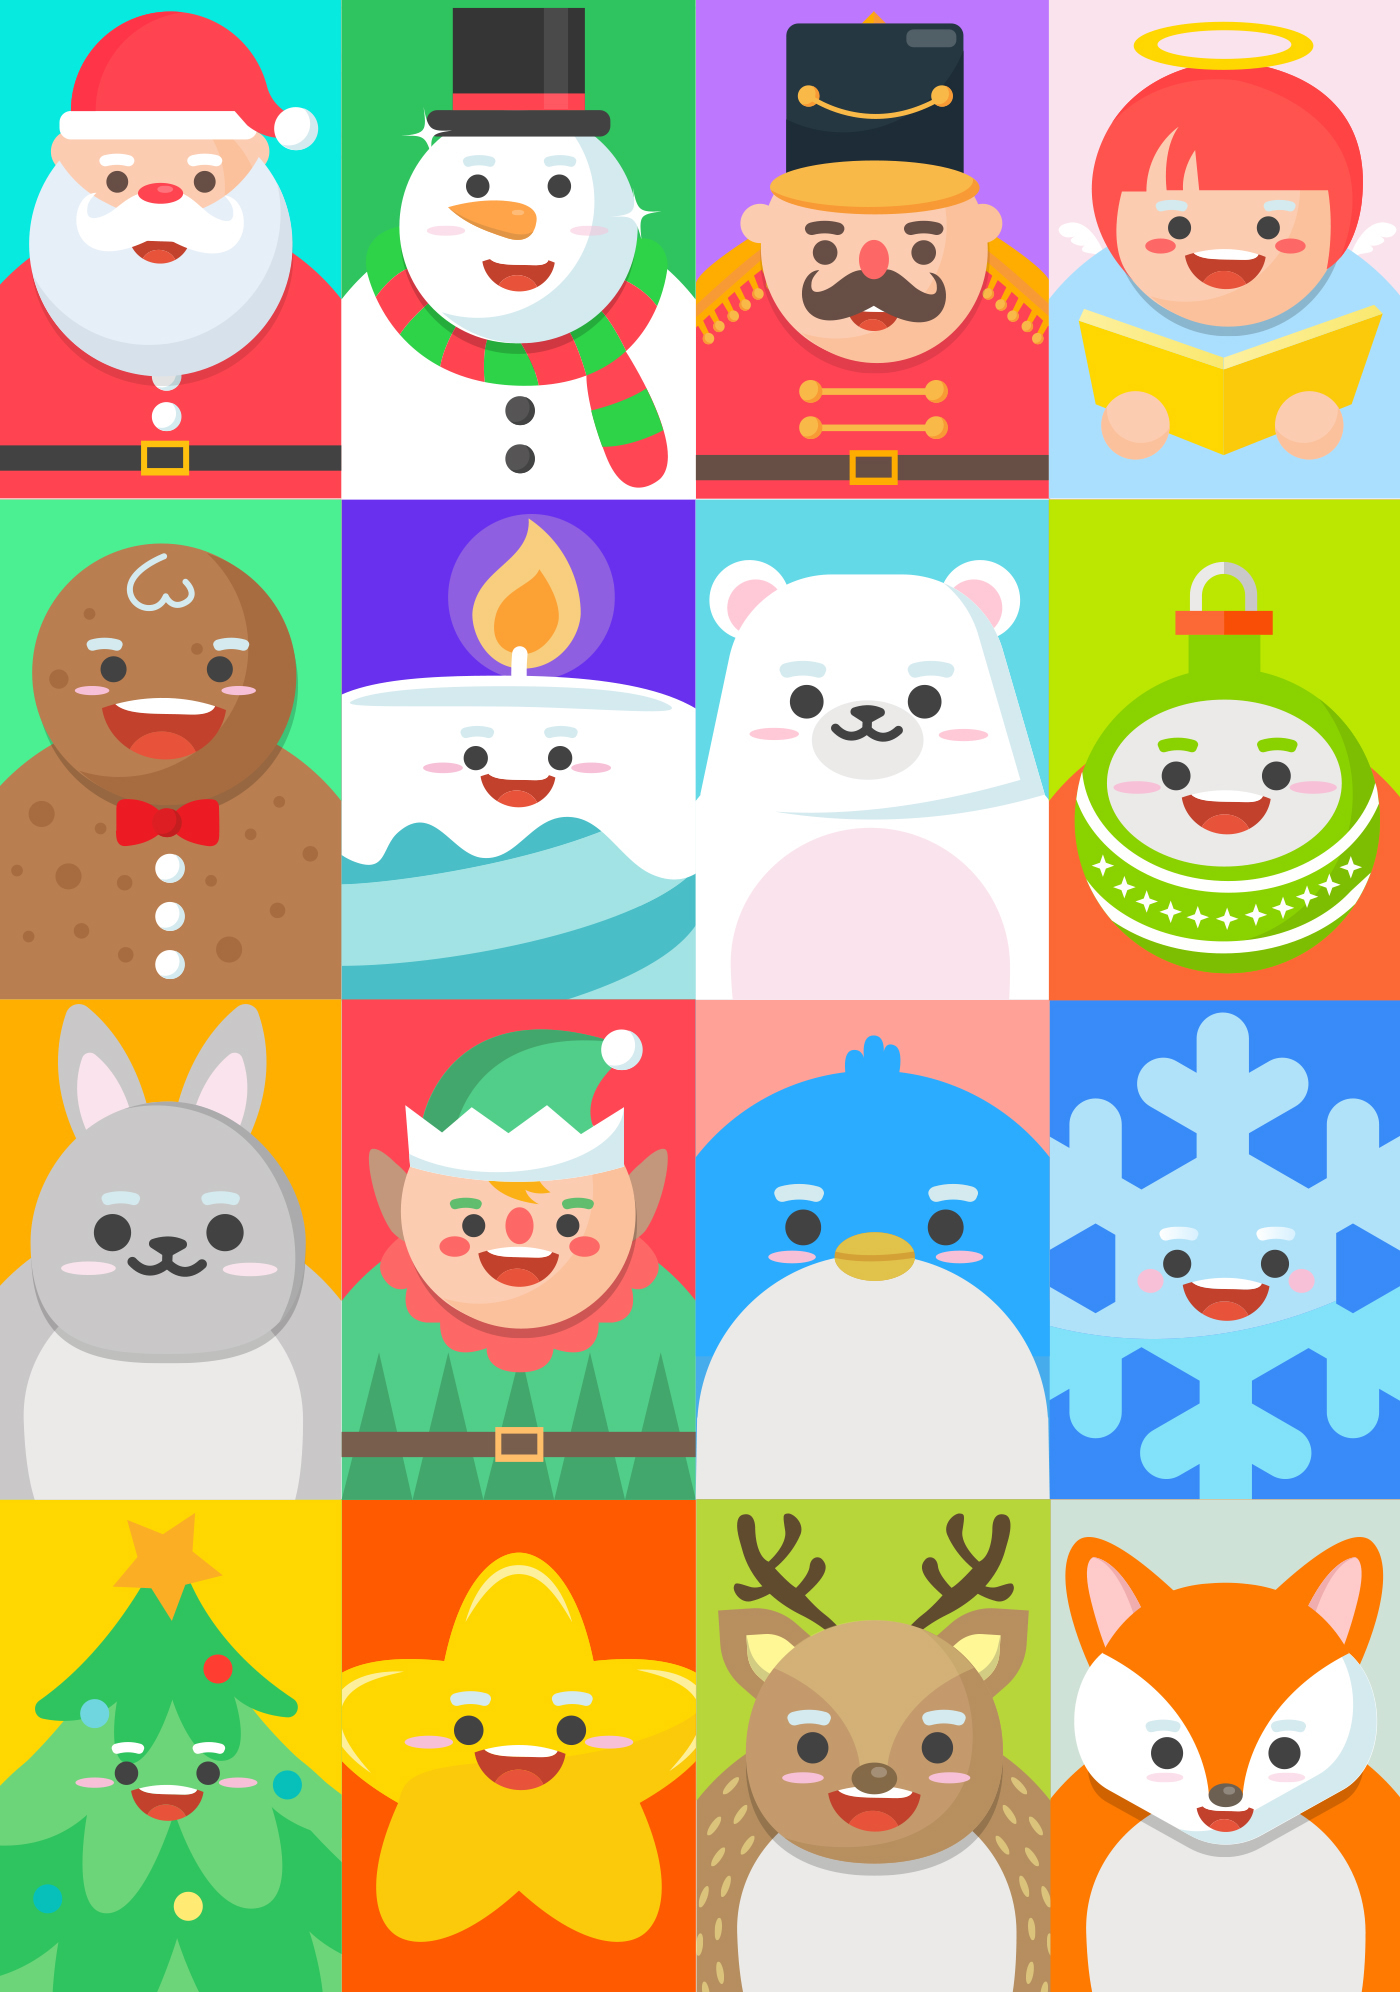 xmasland Christmas characters christmasland cute snowman Santa Claus gingerbread man xmas new year